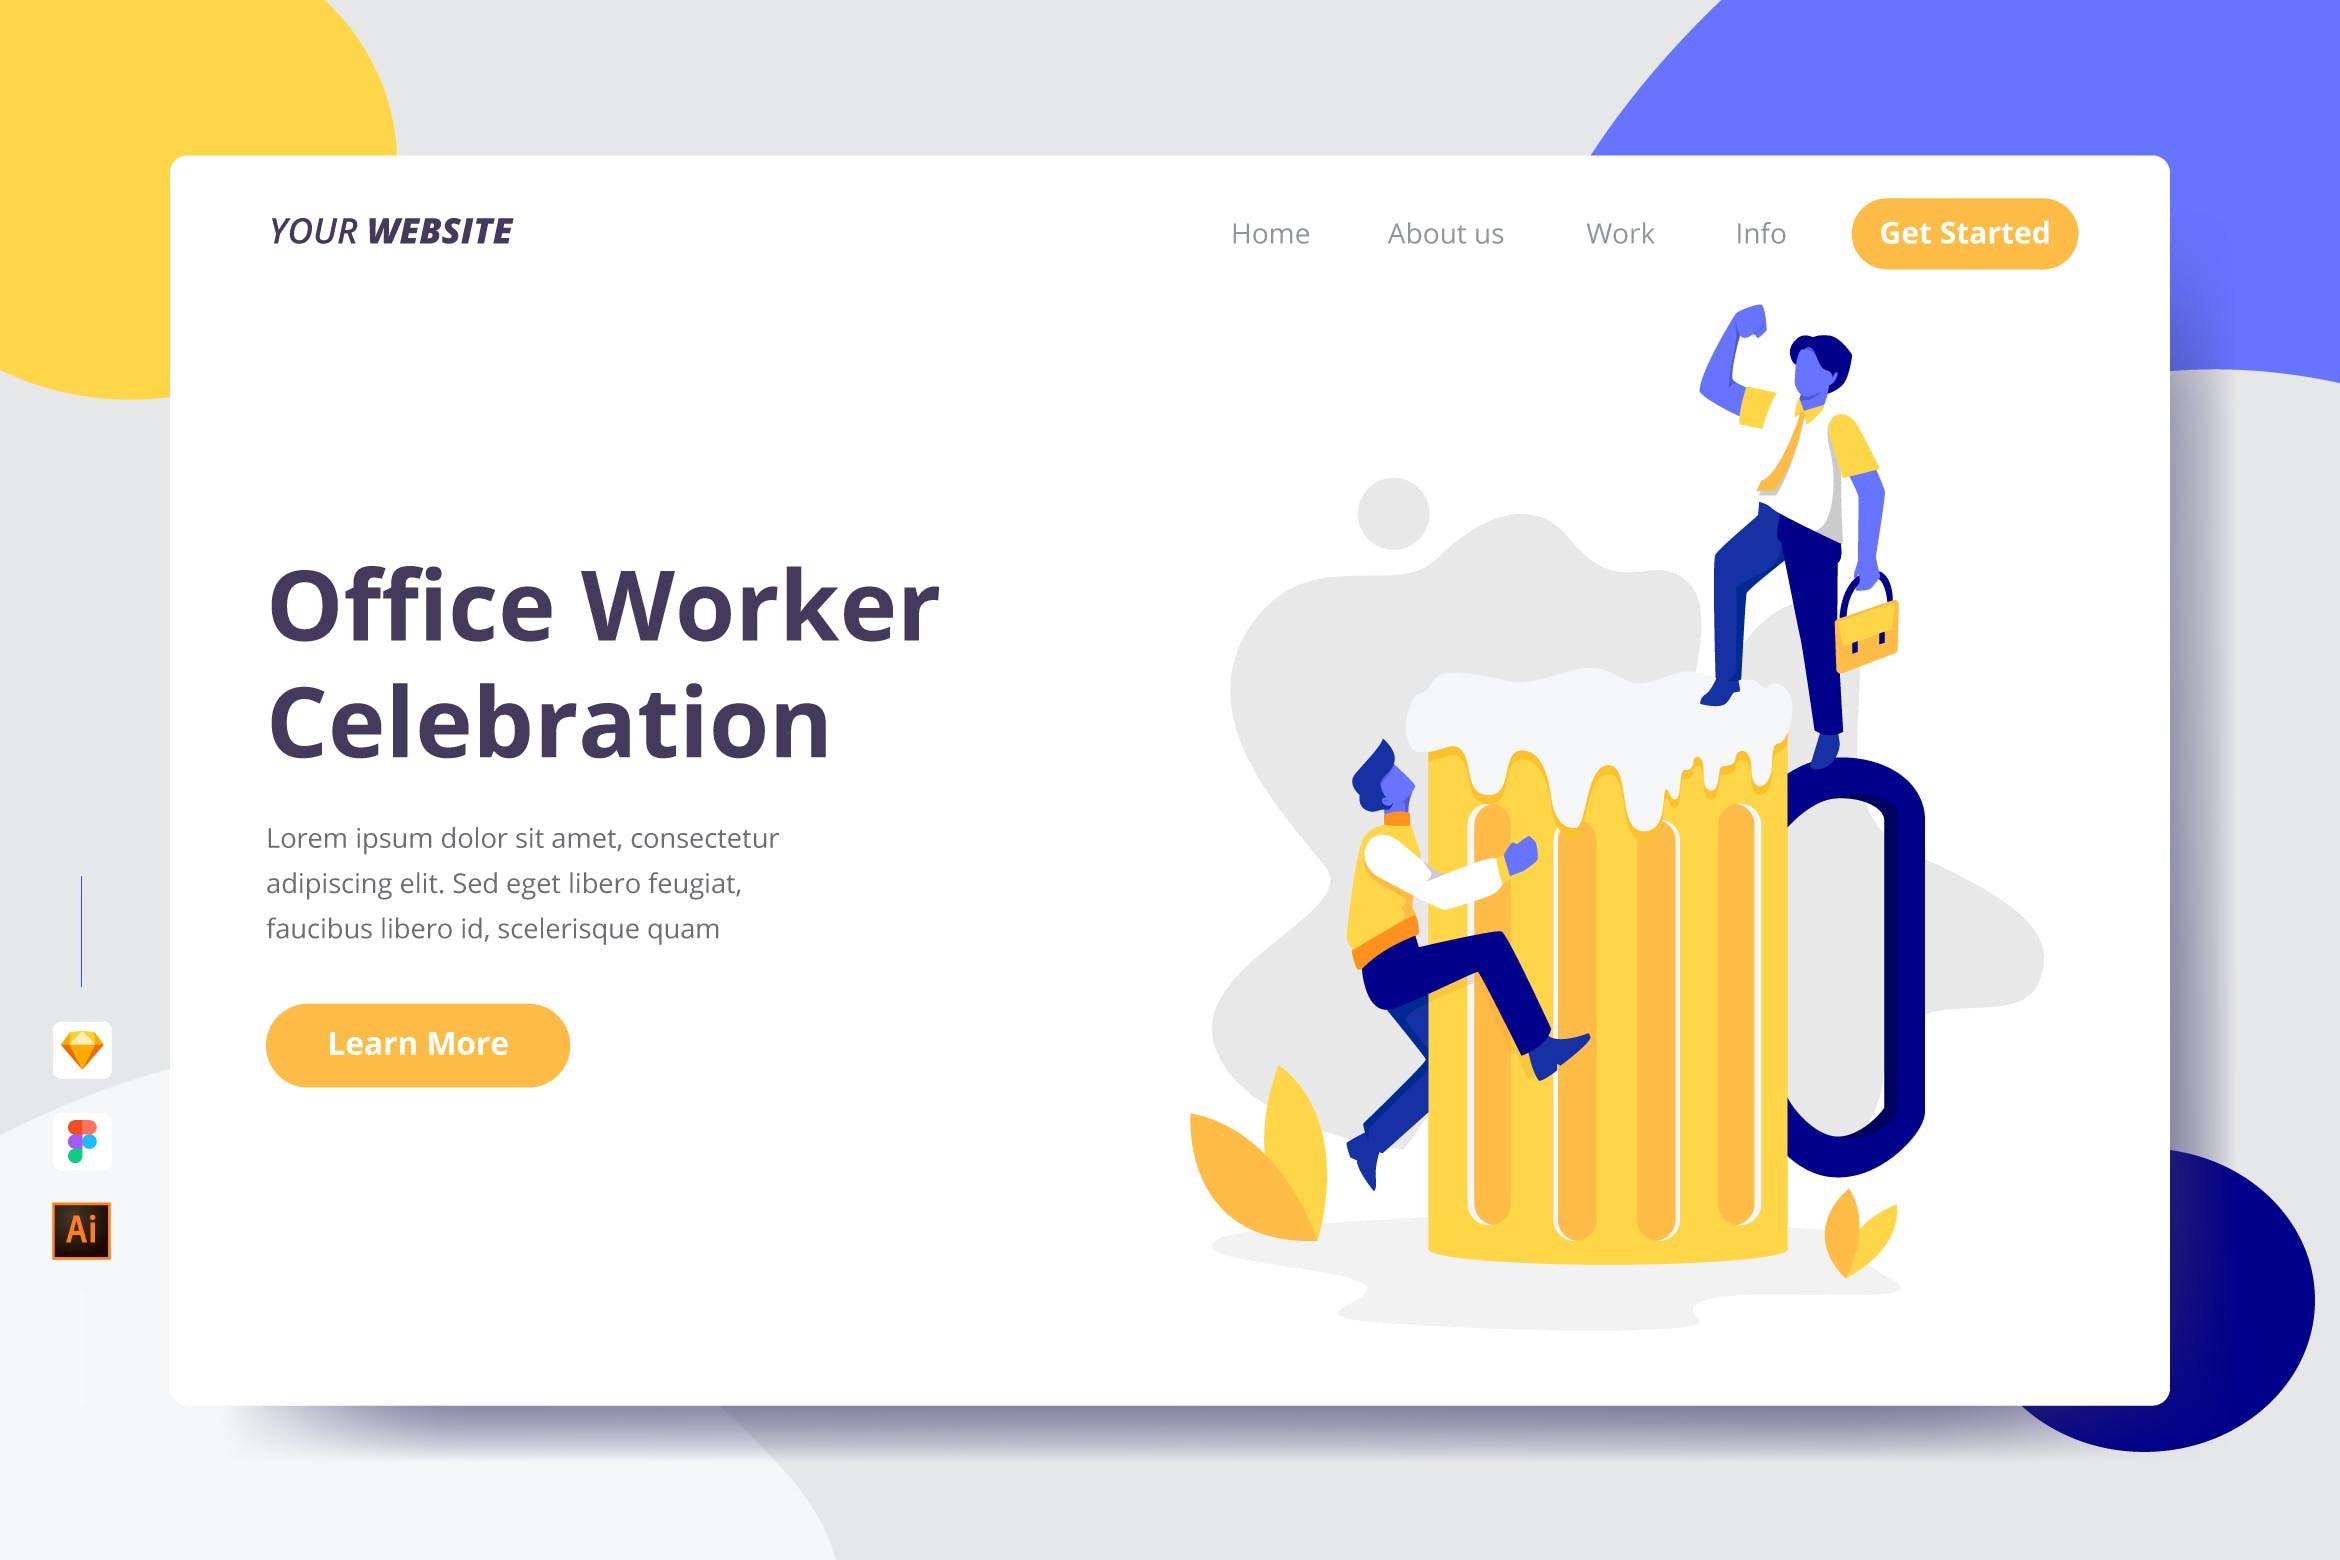 上班族庆祝活动主题插画网站着陆页设计第一素材精选模板 Office Worker Celebration – Landing Page插图